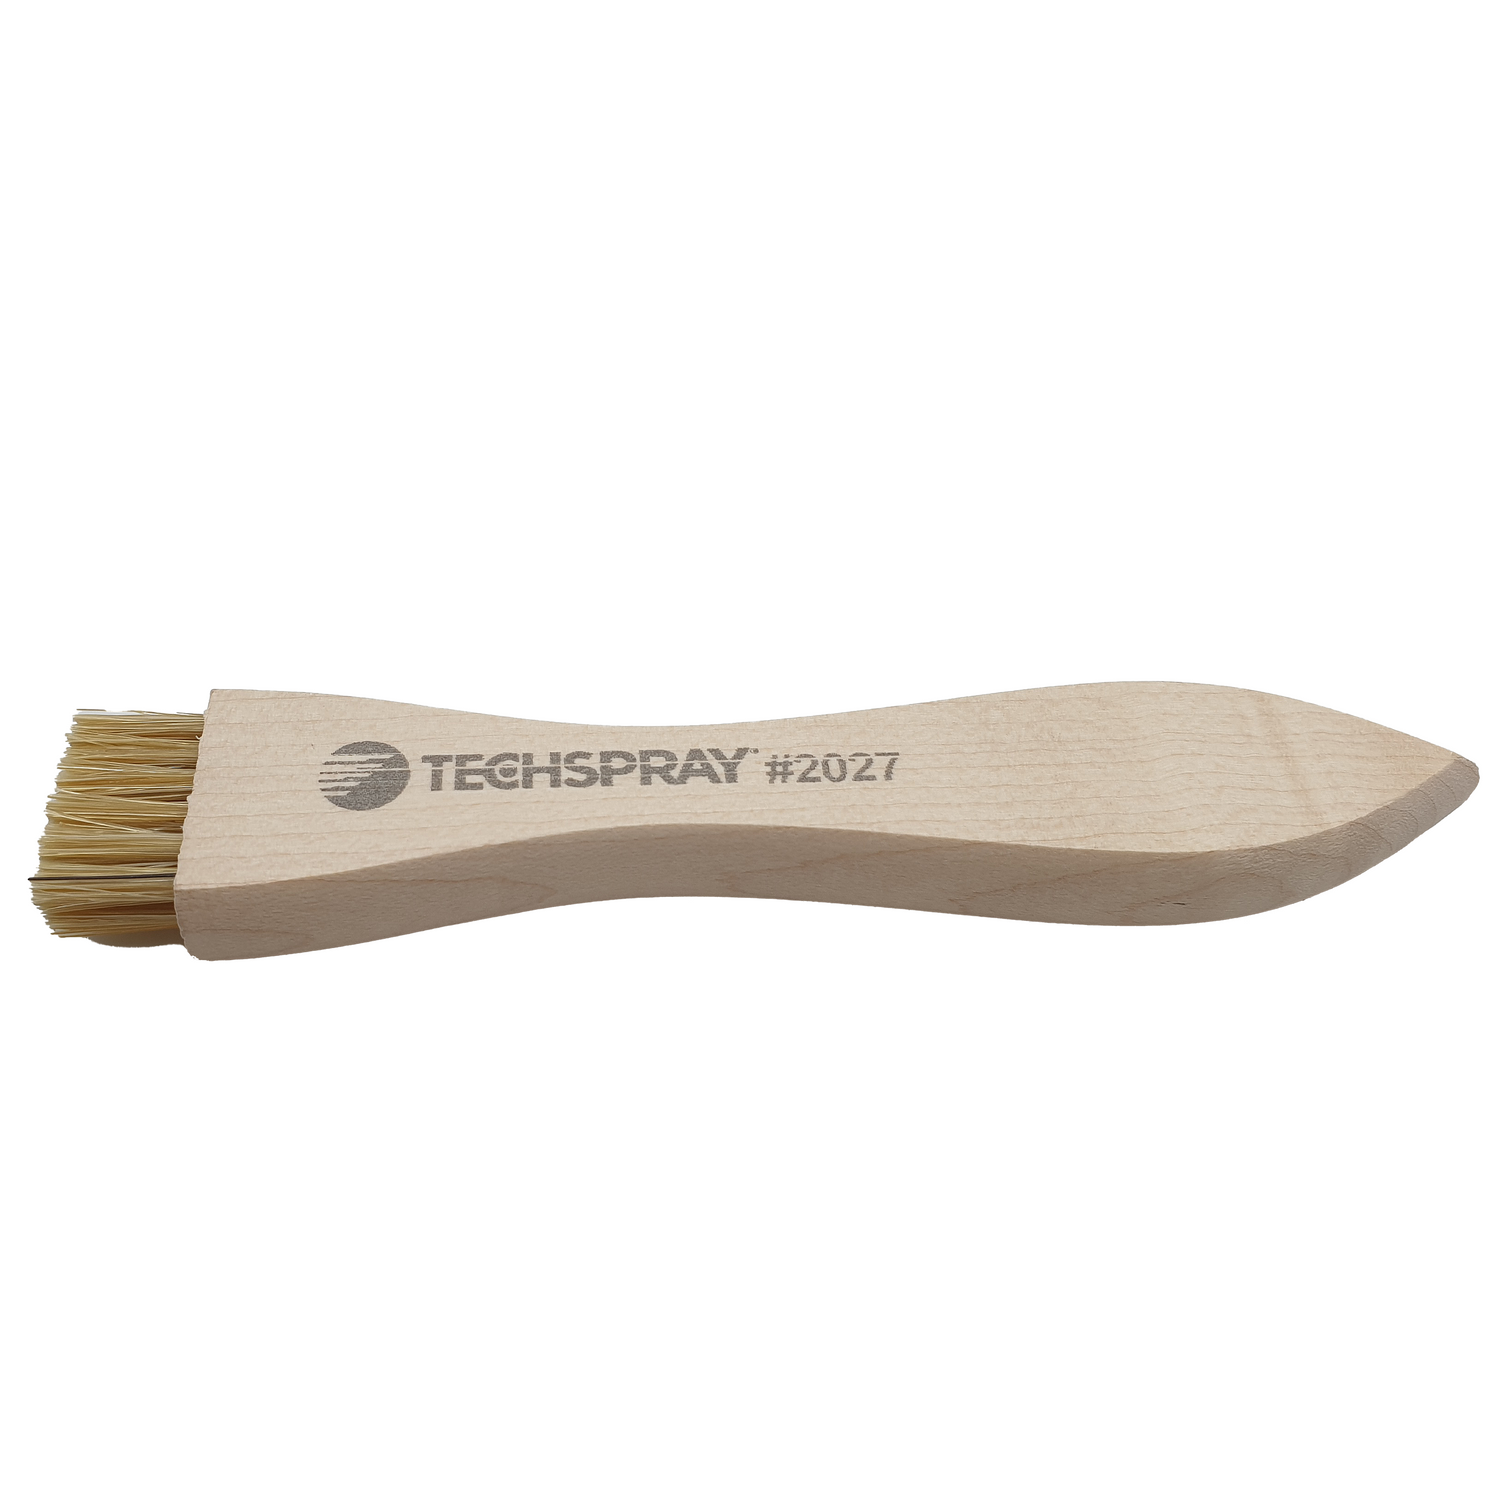 Techspray 2027 hog hair brush clean dirt dust printed circuit board